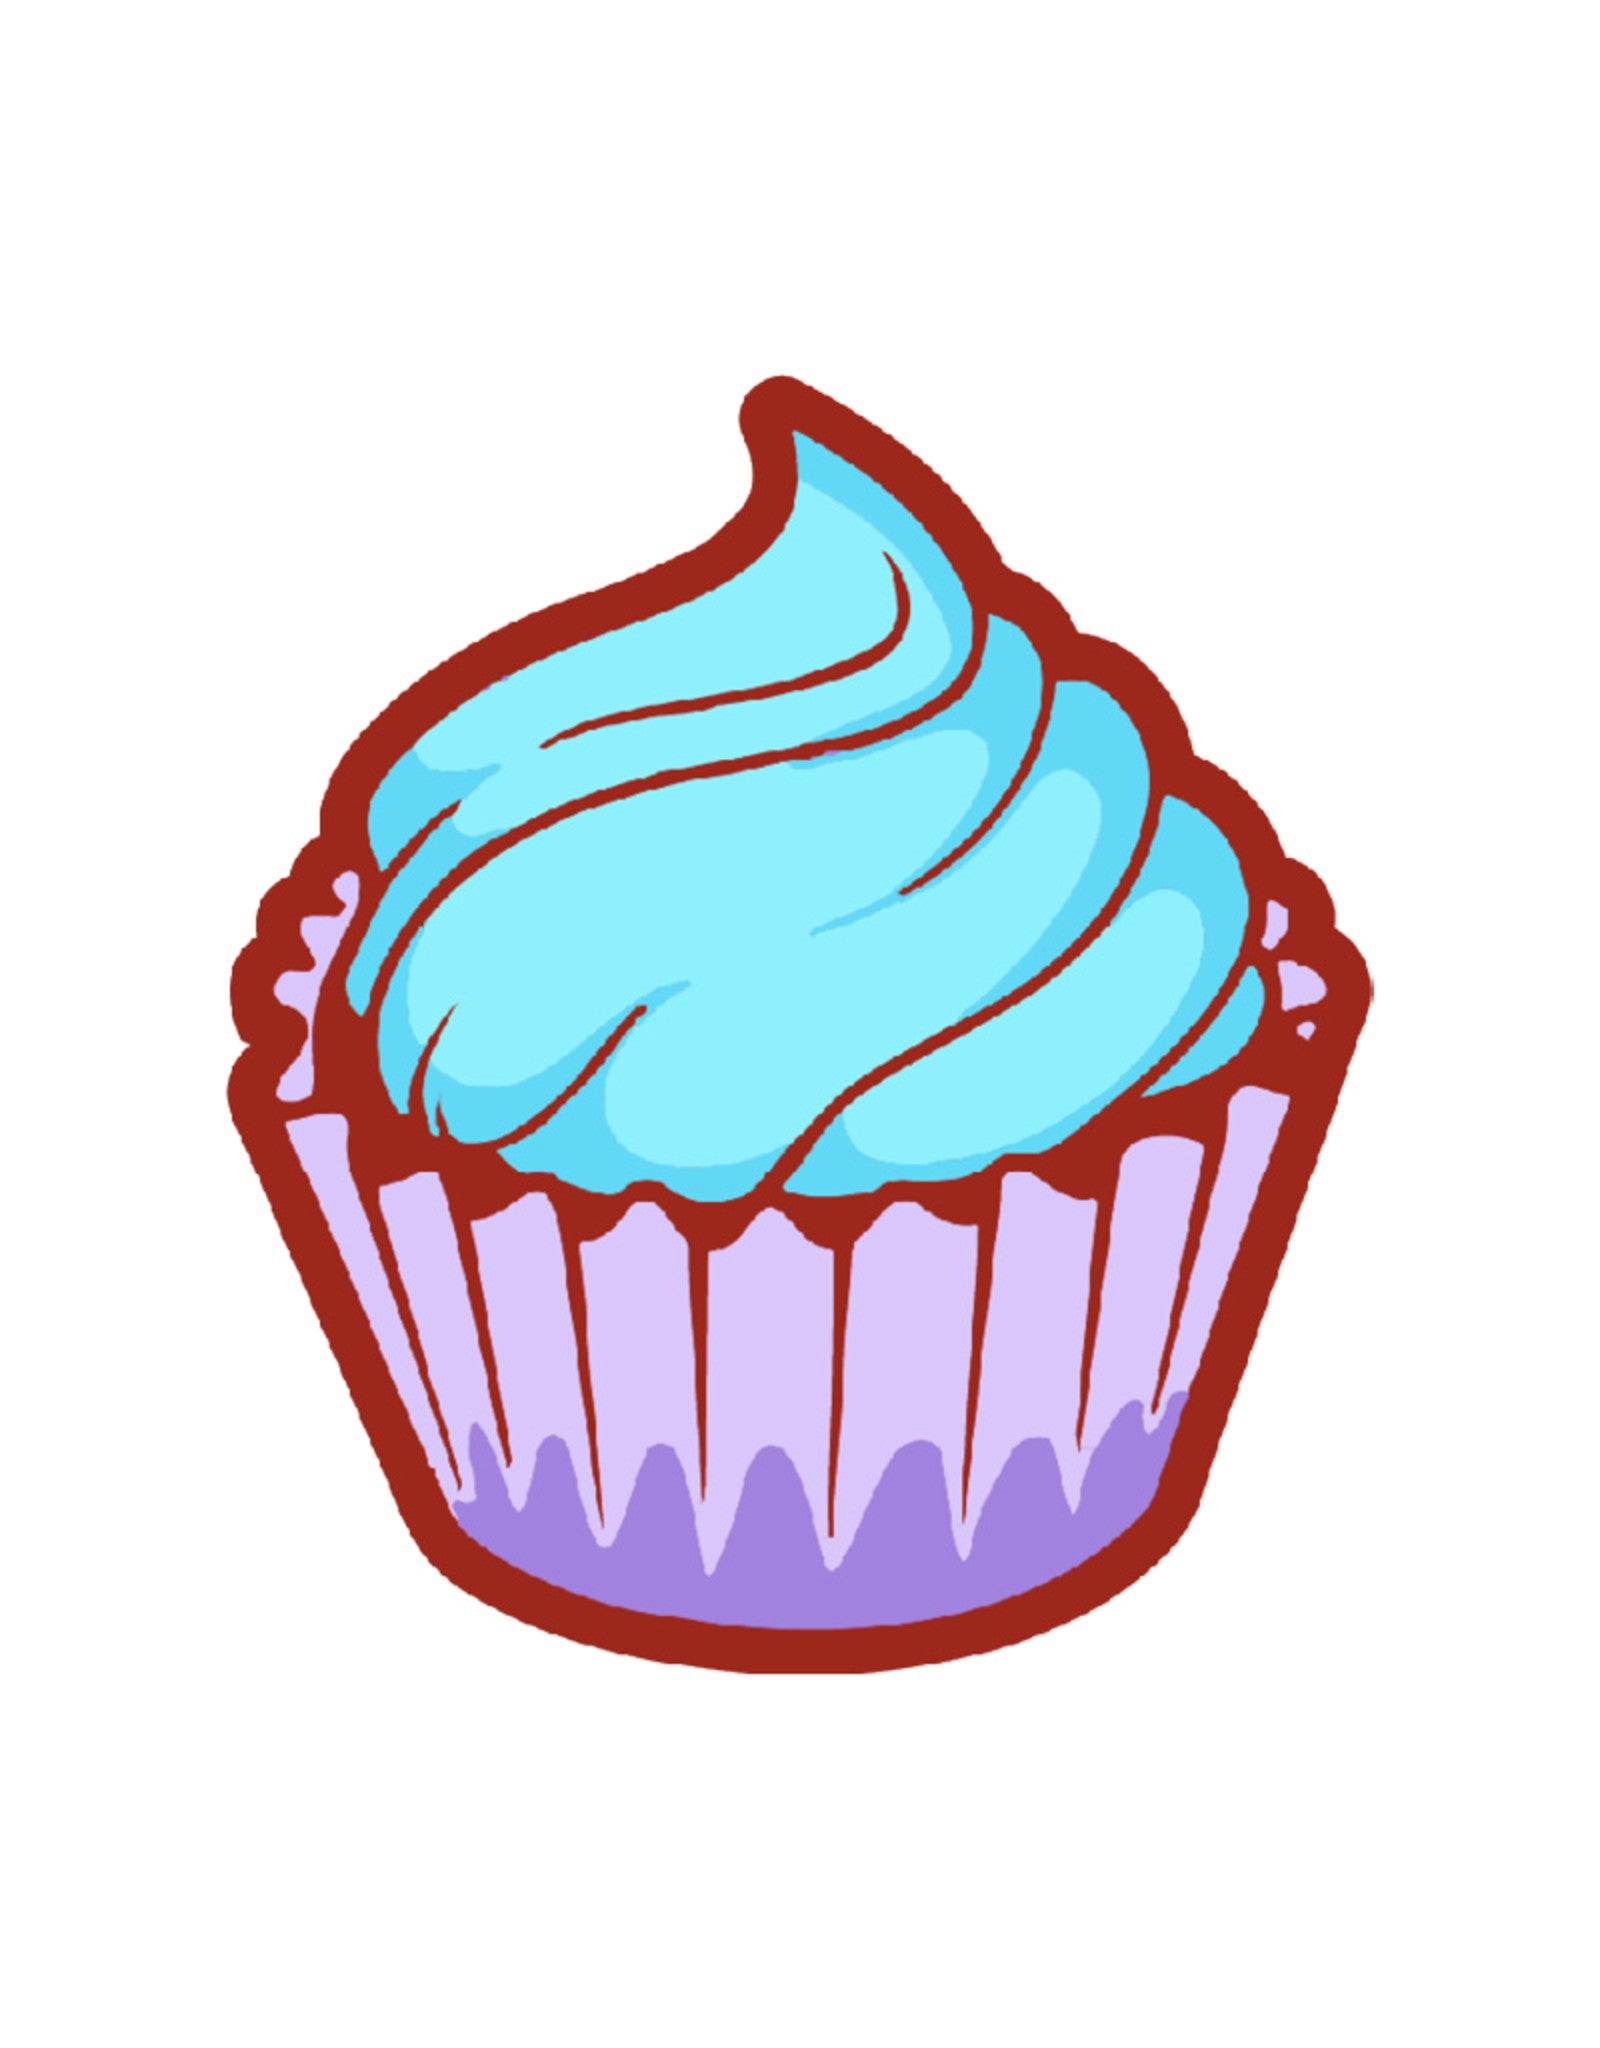 noso-noso-cupcake-patch.jpg